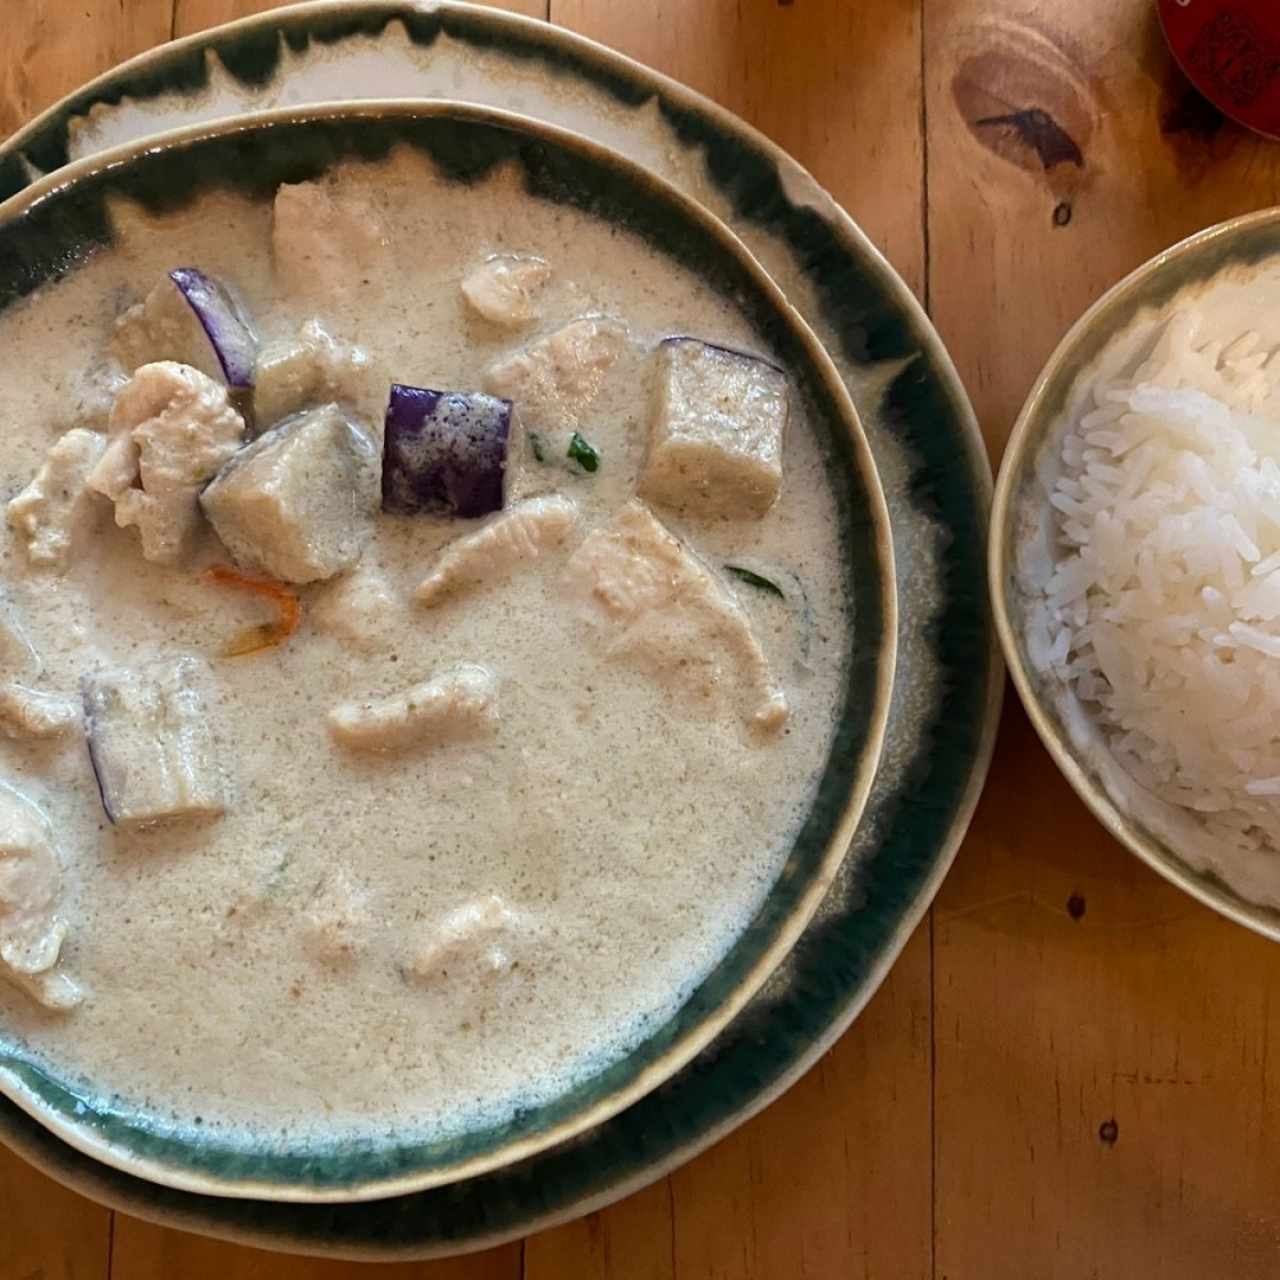 Curry verde cremoso con pollo y vegetales (berenjena) picante al gusto, acompañado con arroz de jazmín. 